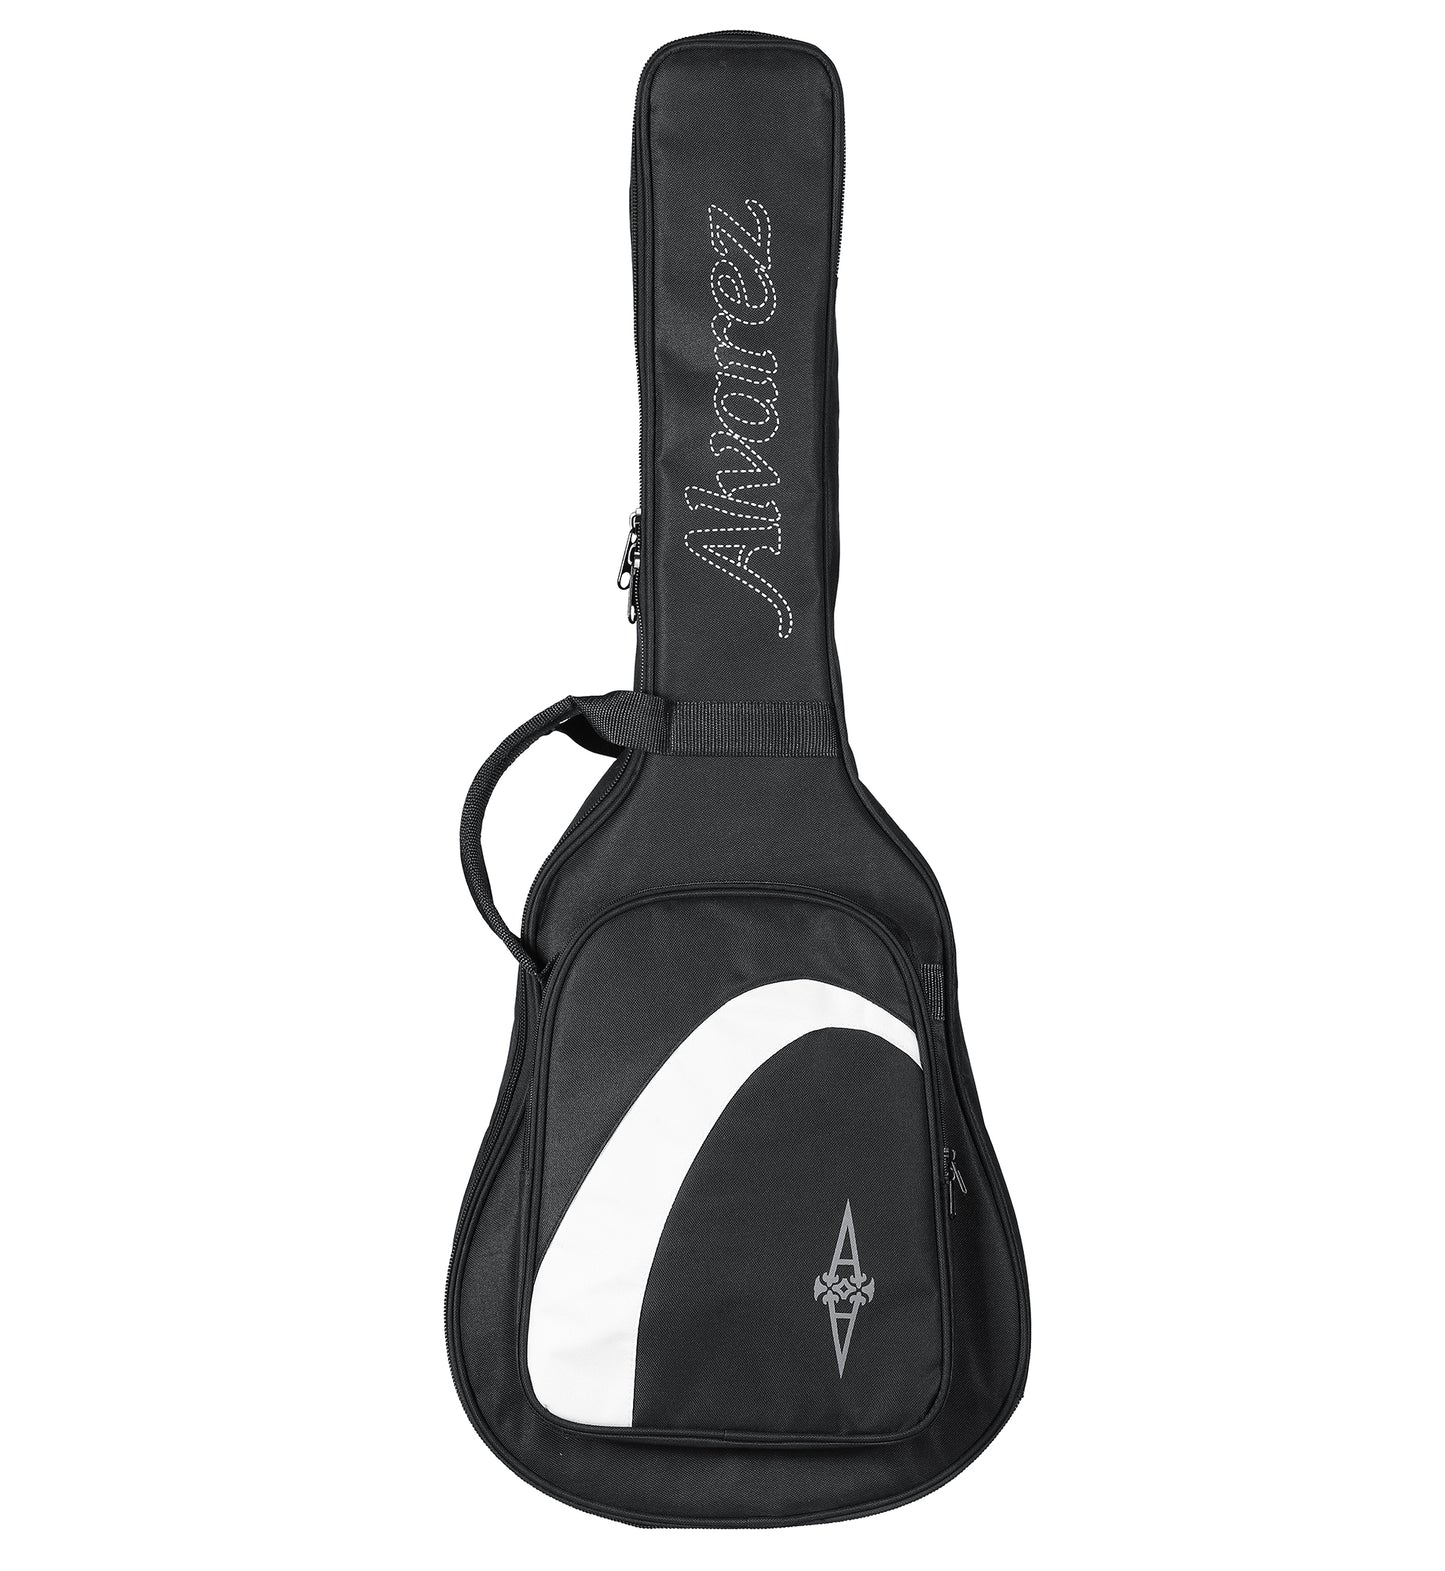 Alvarez RS26 Regent Series Short Scale Student Acoustic Guitar w/ Gig Bag